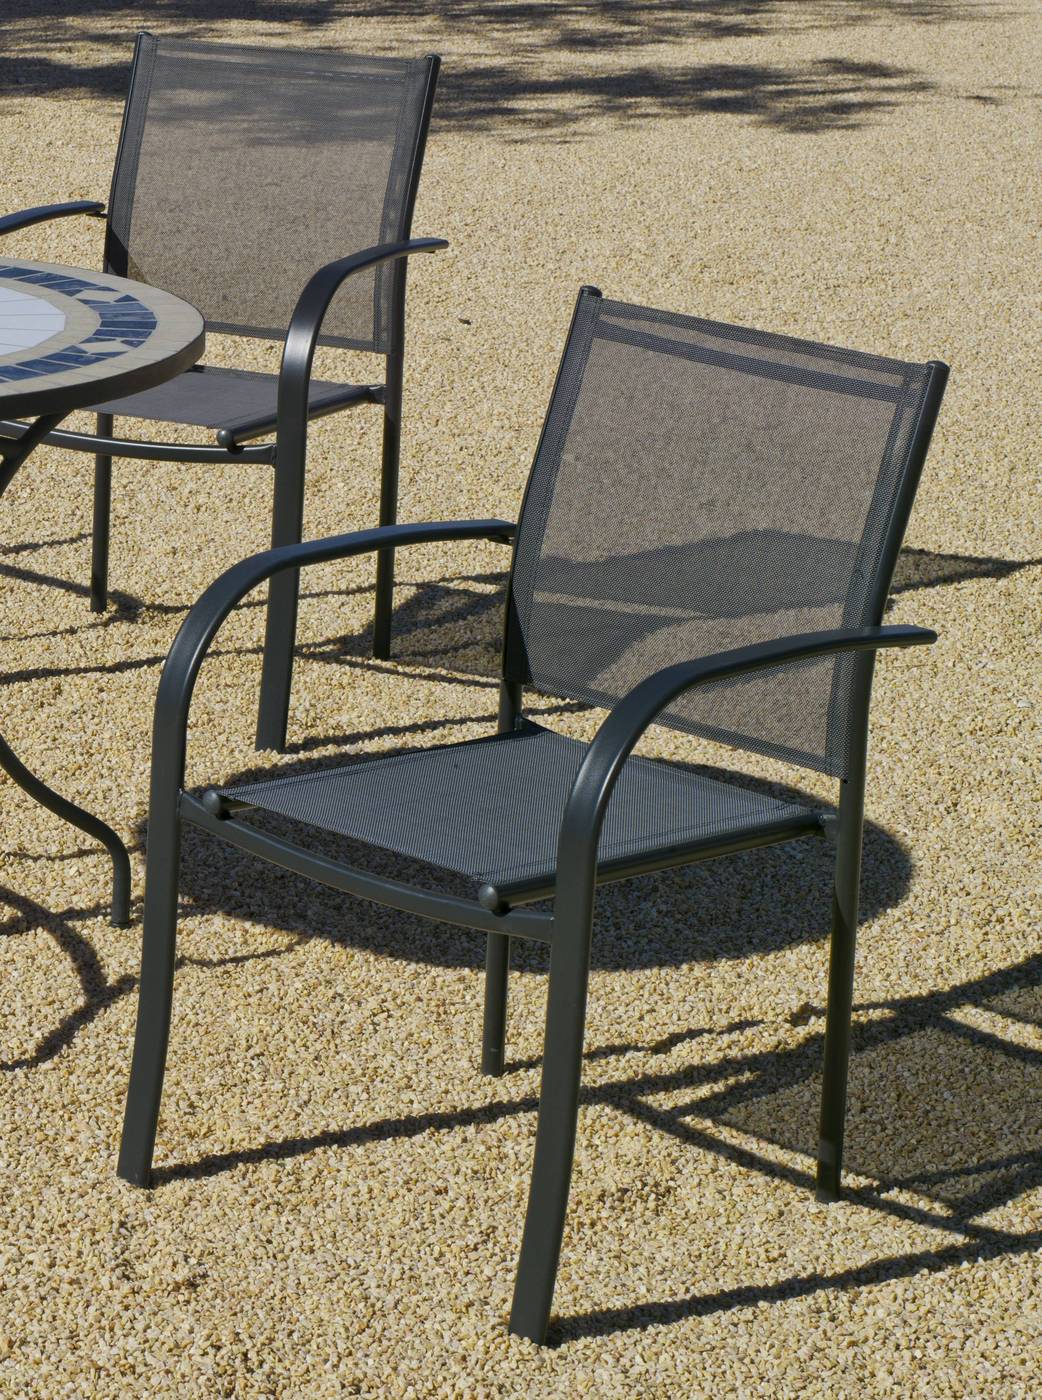 Set Acero Cordoba-Europa 90-4 - Conjunto de acero color antracita: mesa redonda de 90 cm. Con tapa de cristal templado + 4 sillones de acero y textilen